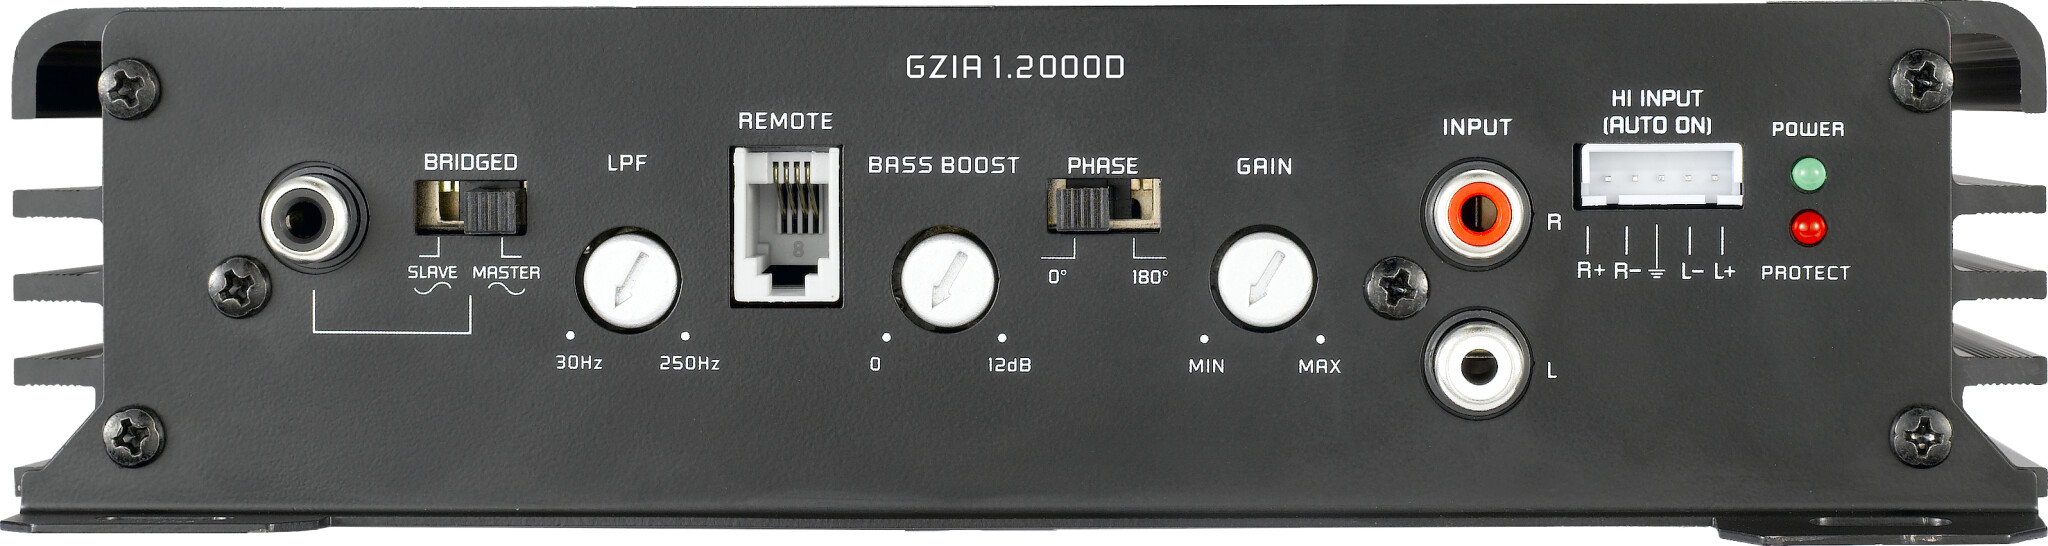 GROUND ZERO BASSKIT GZ 800